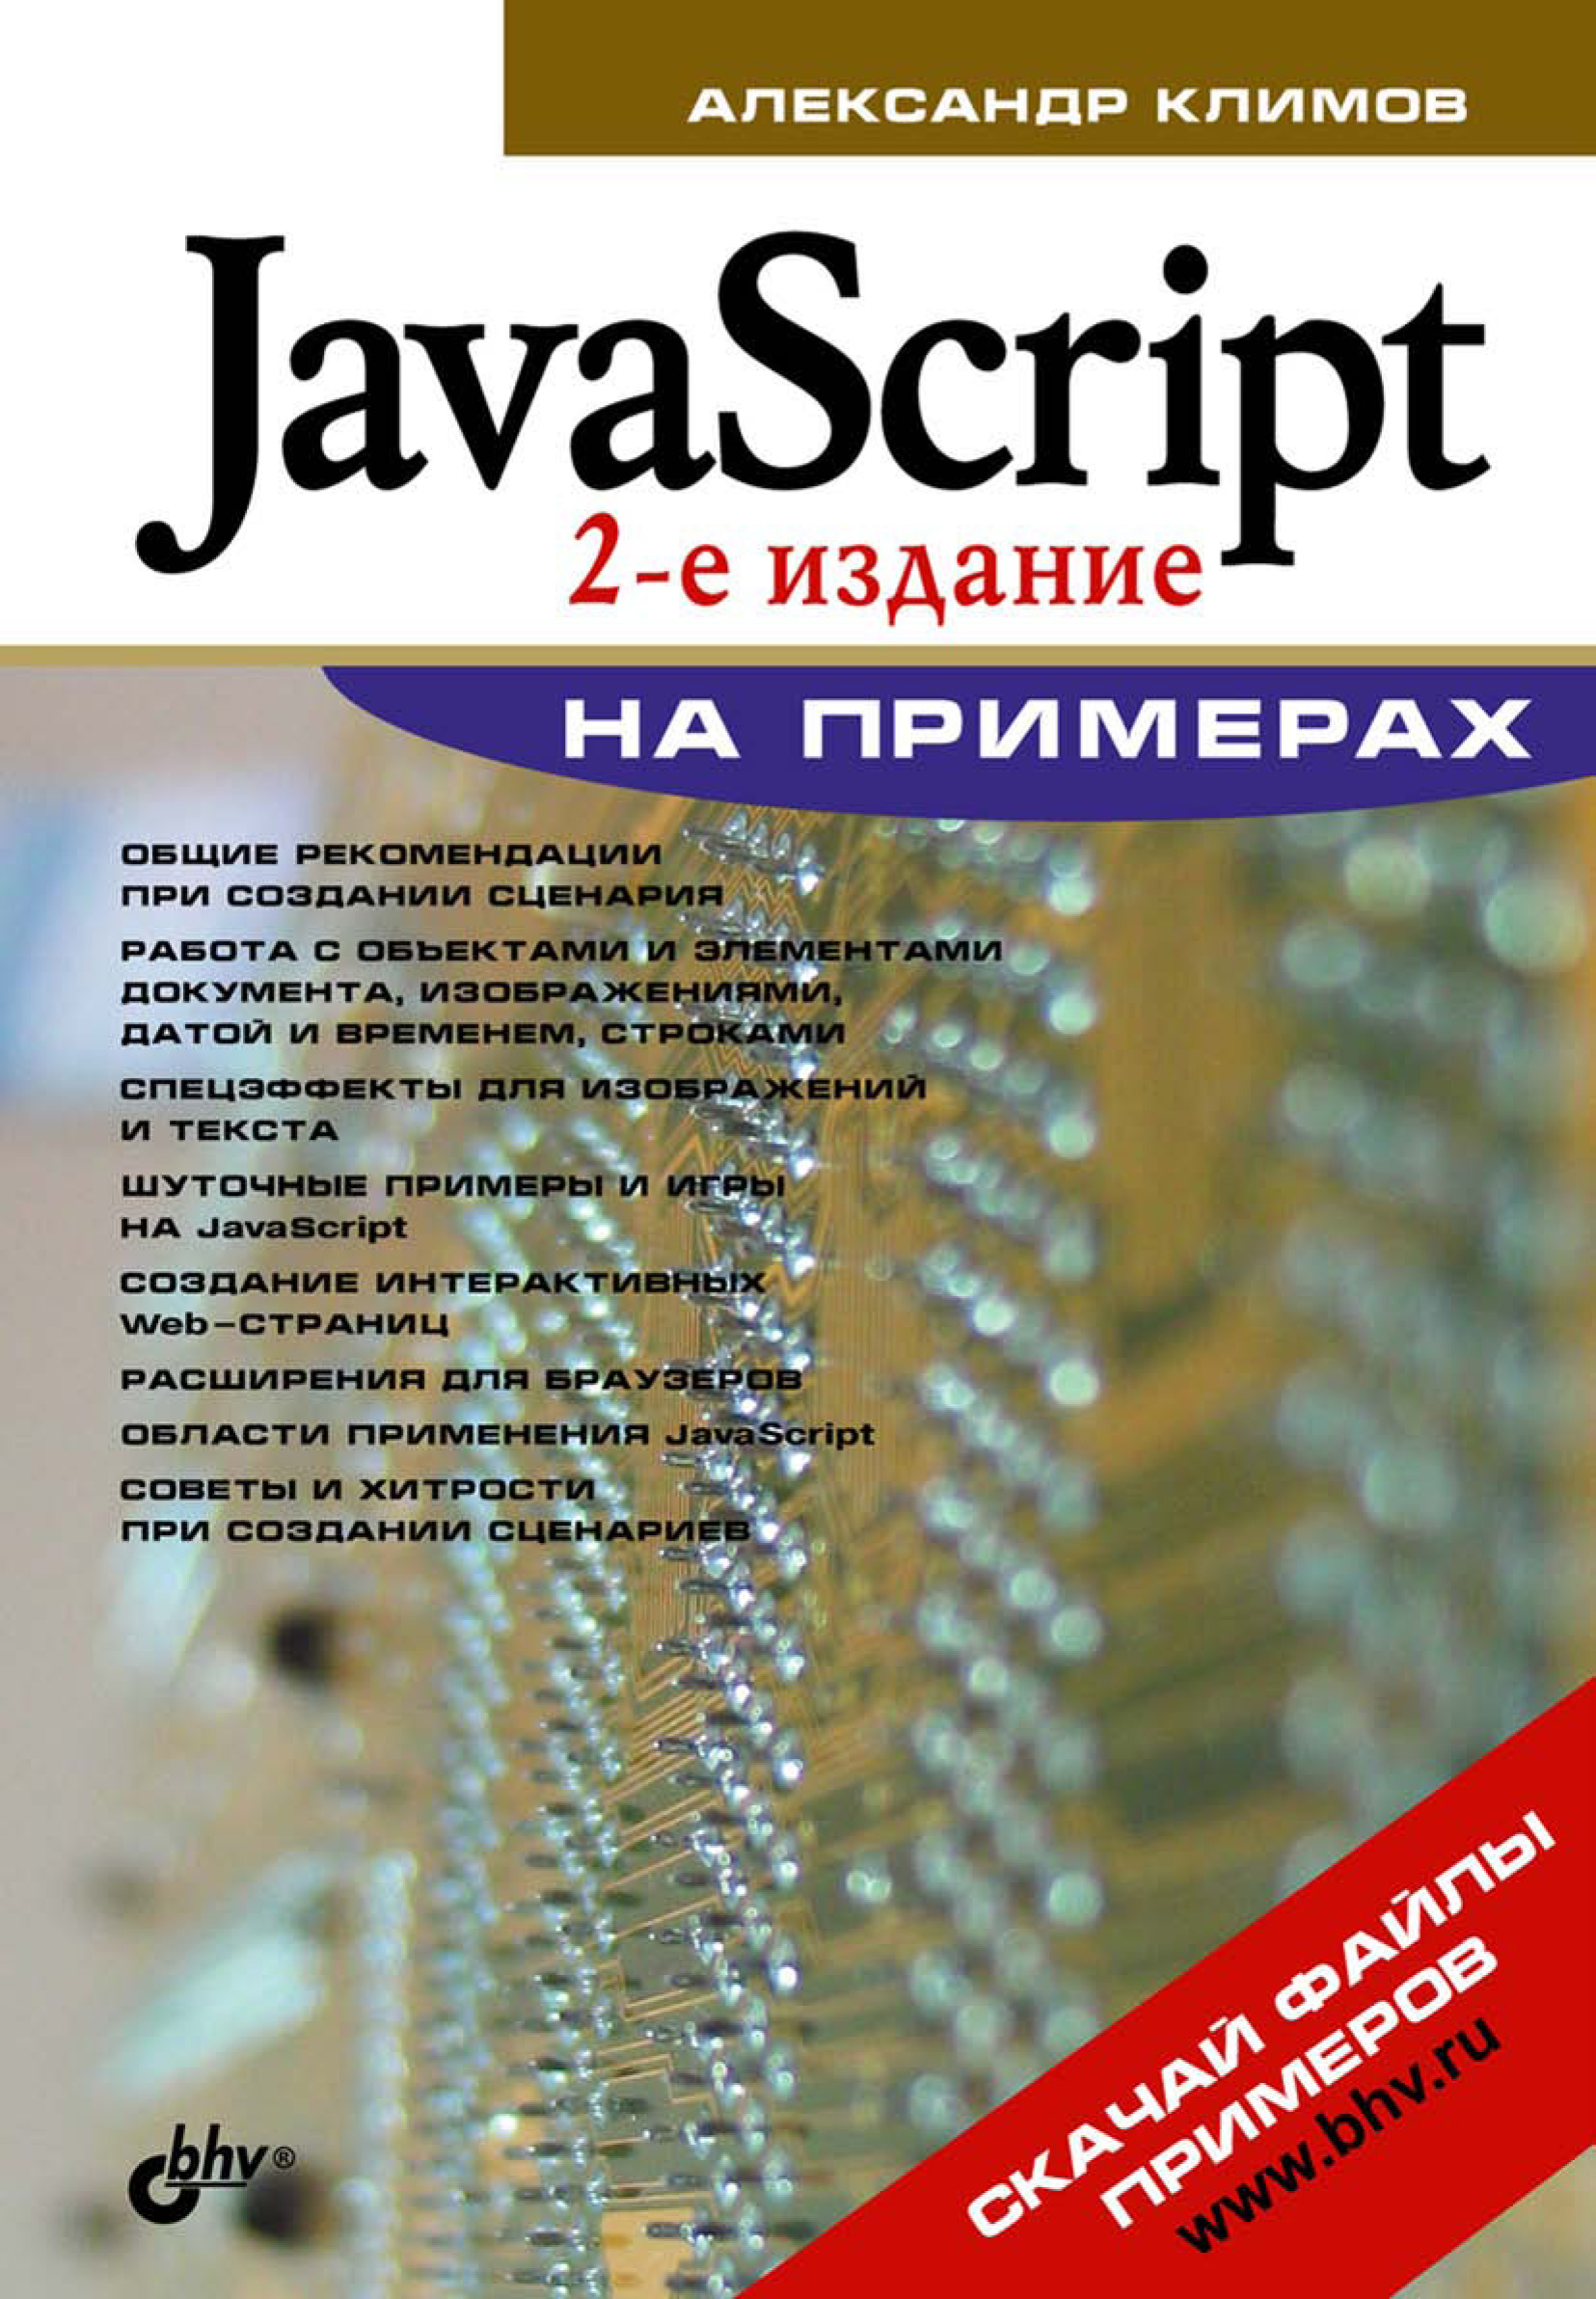 Книга На примерах JavaScript на примерах созданная Александр Климов может относится к жанру программирование. Стоимость электронной книги JavaScript на примерах с идентификатором 6990126 составляет 135.00 руб.